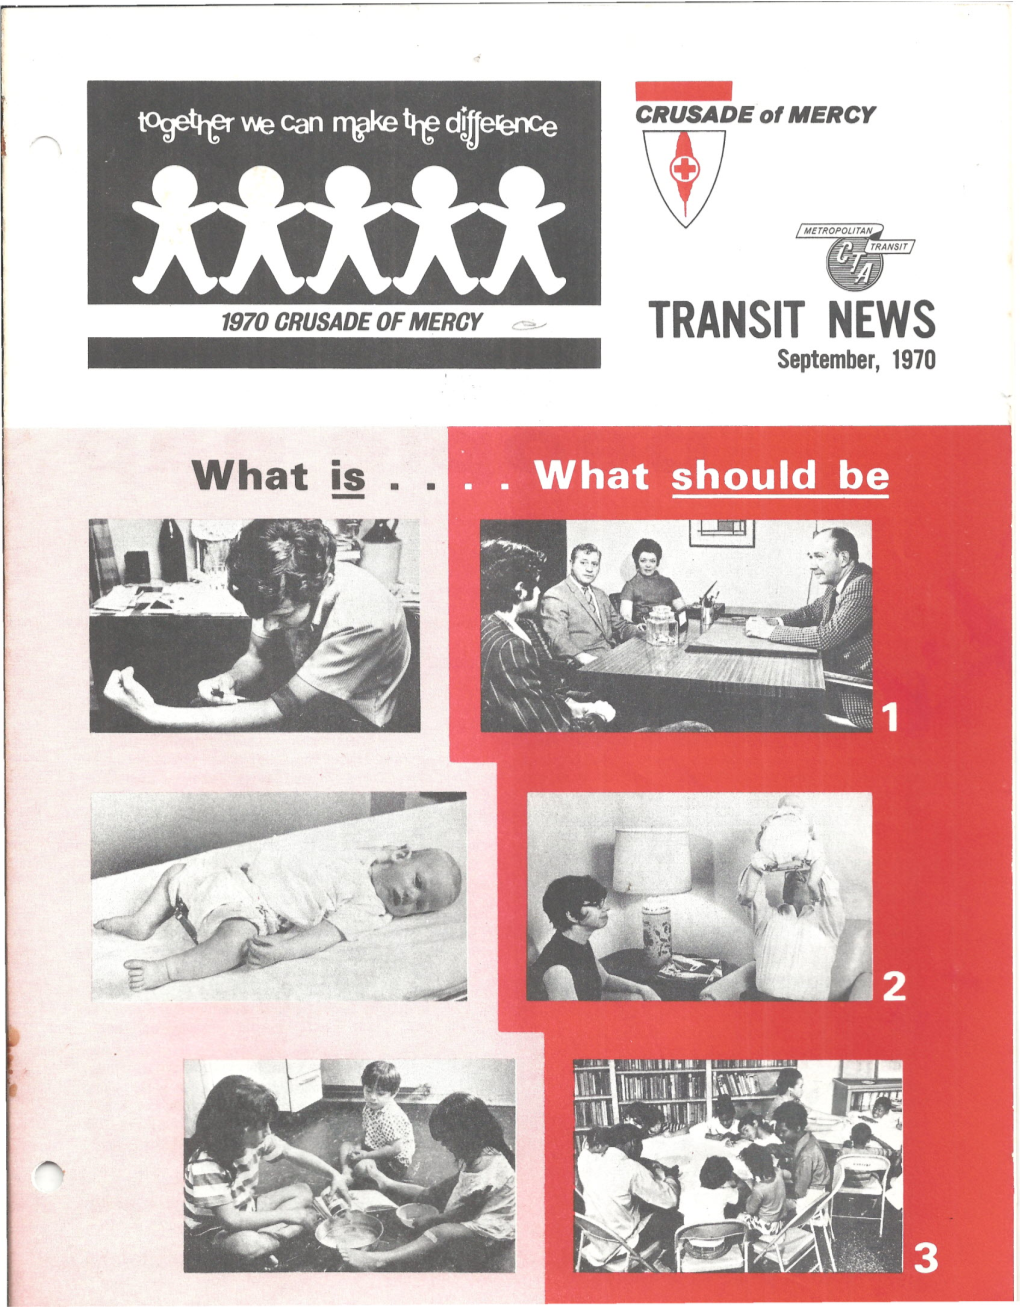 TRANSIT NEWS September, 1970